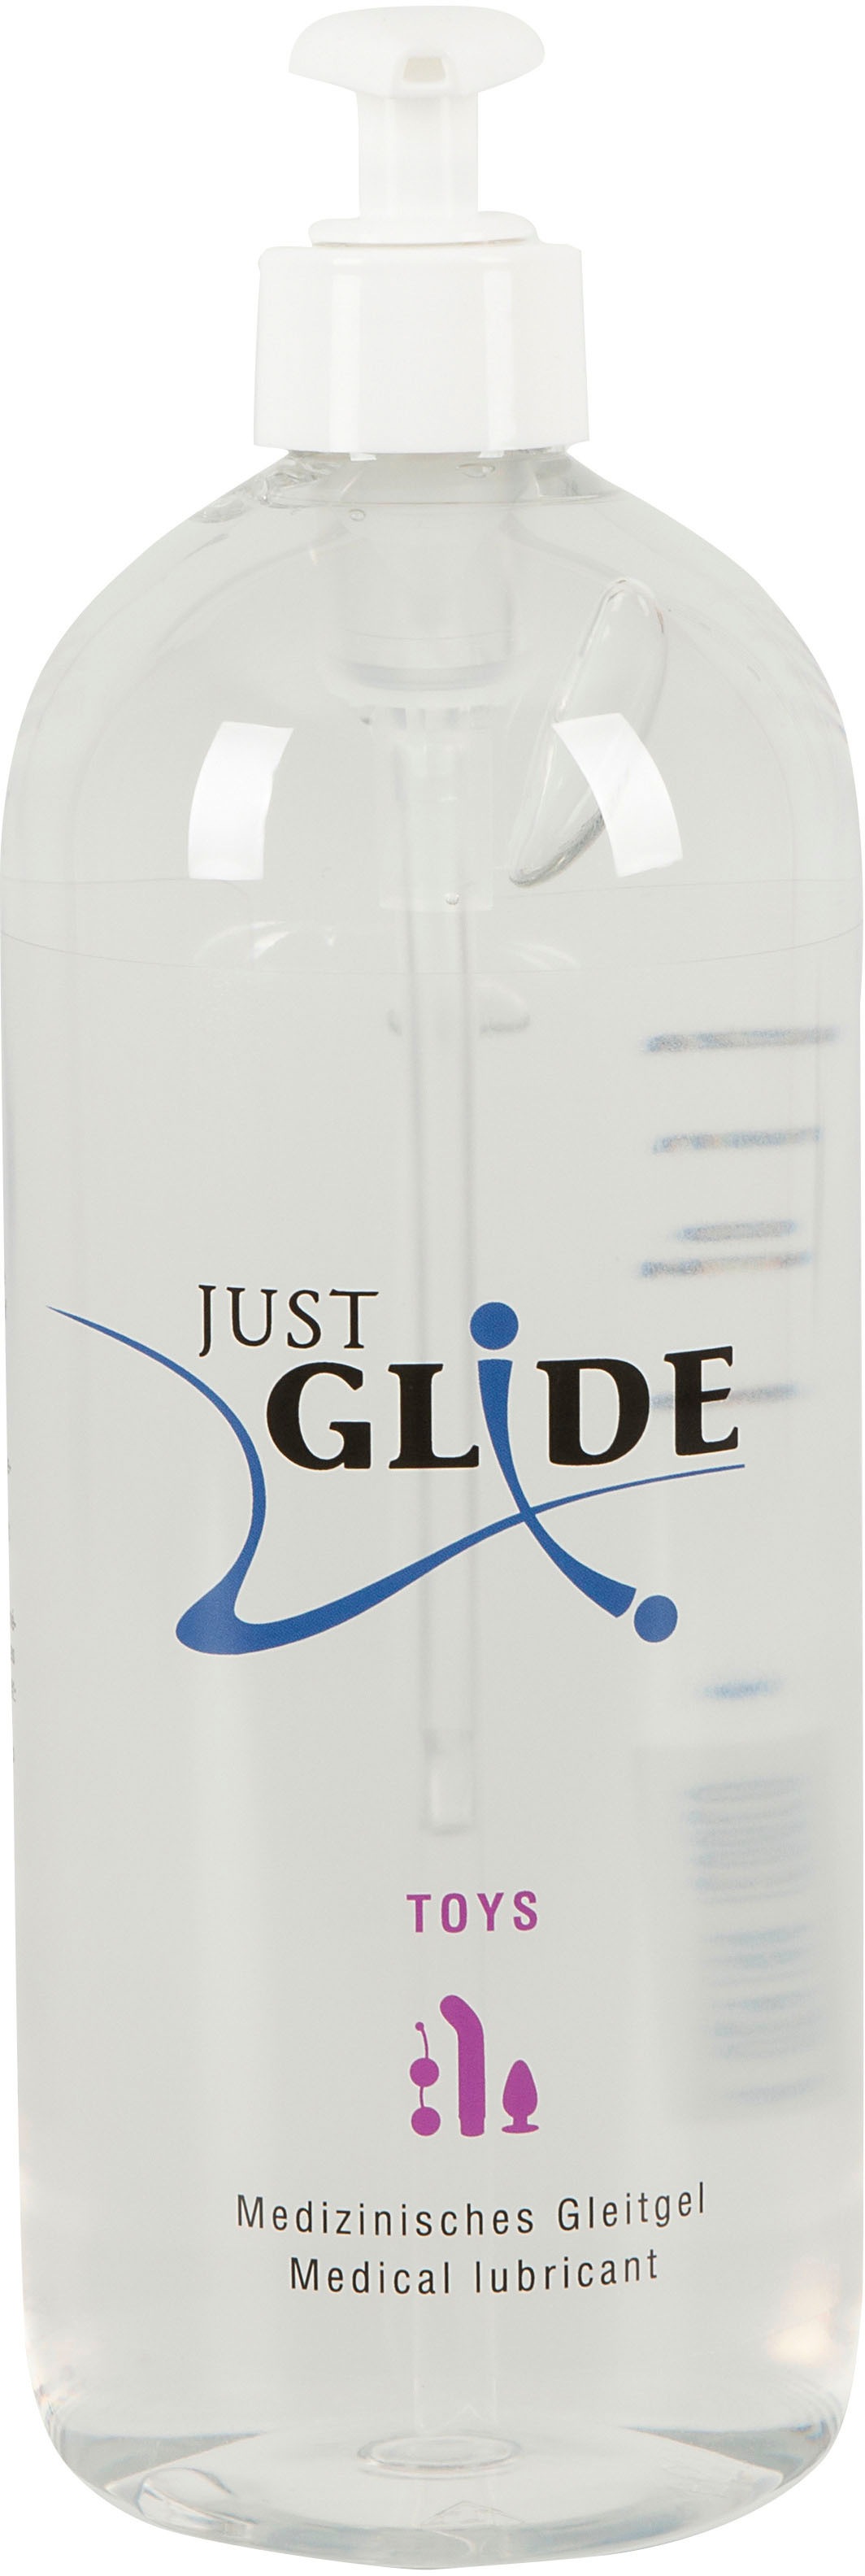 Gleitgel Glide | Just BAUR bestellen